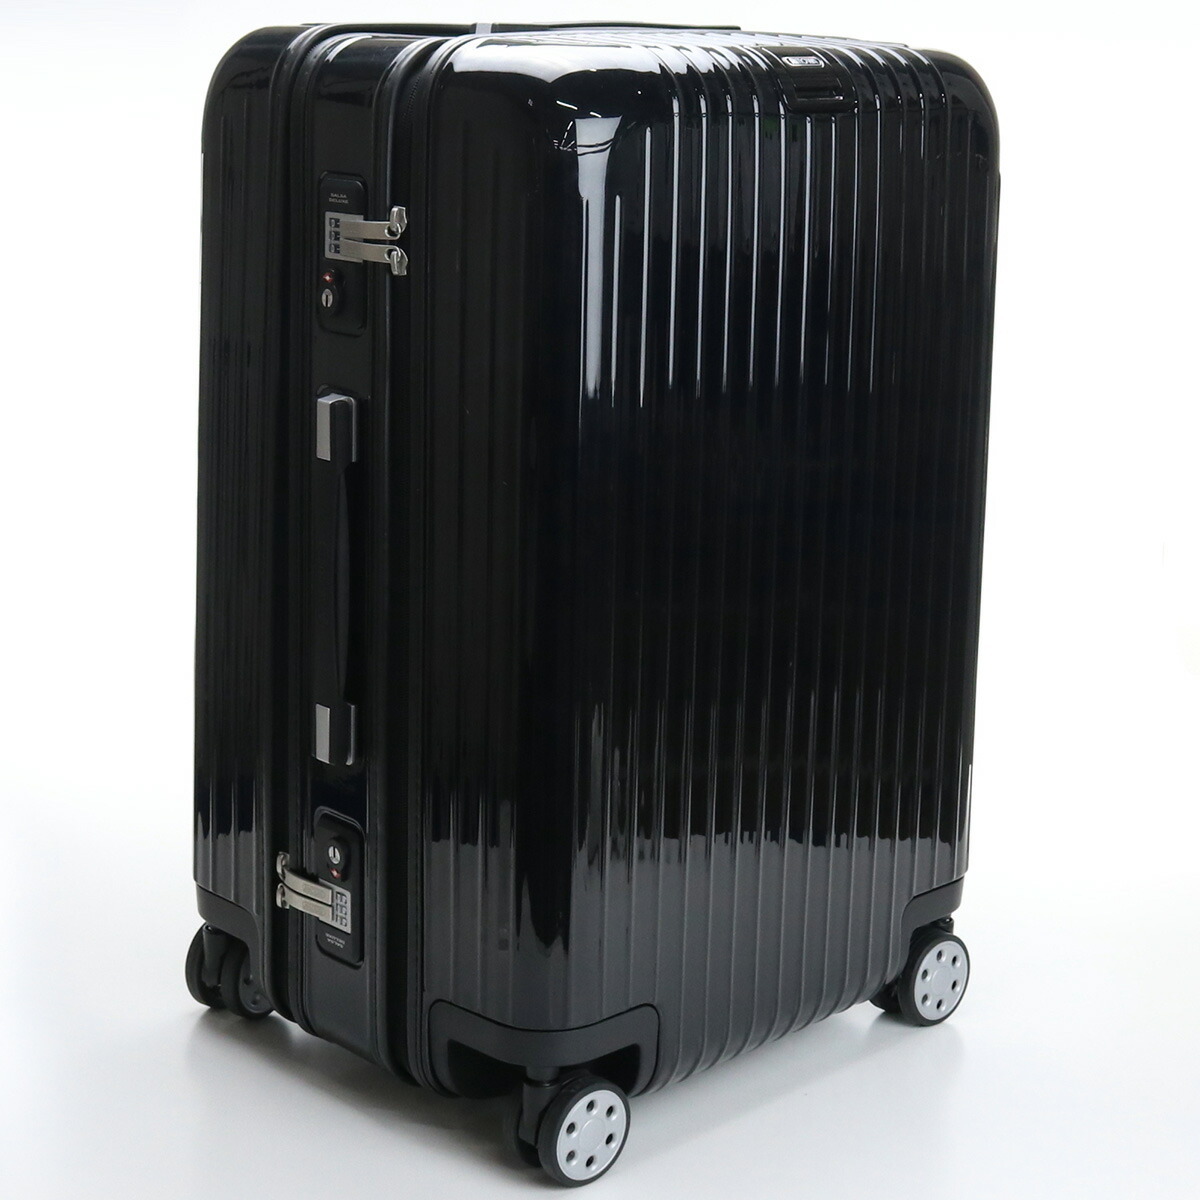 58744円 【数量は多】 リモワ RIMOWA SALSA DELUXE スーツケース 85L キャリーバッグ キャリーケース サルサデラックス 830.65.50.4 ブラック 1週間 7泊 4輪